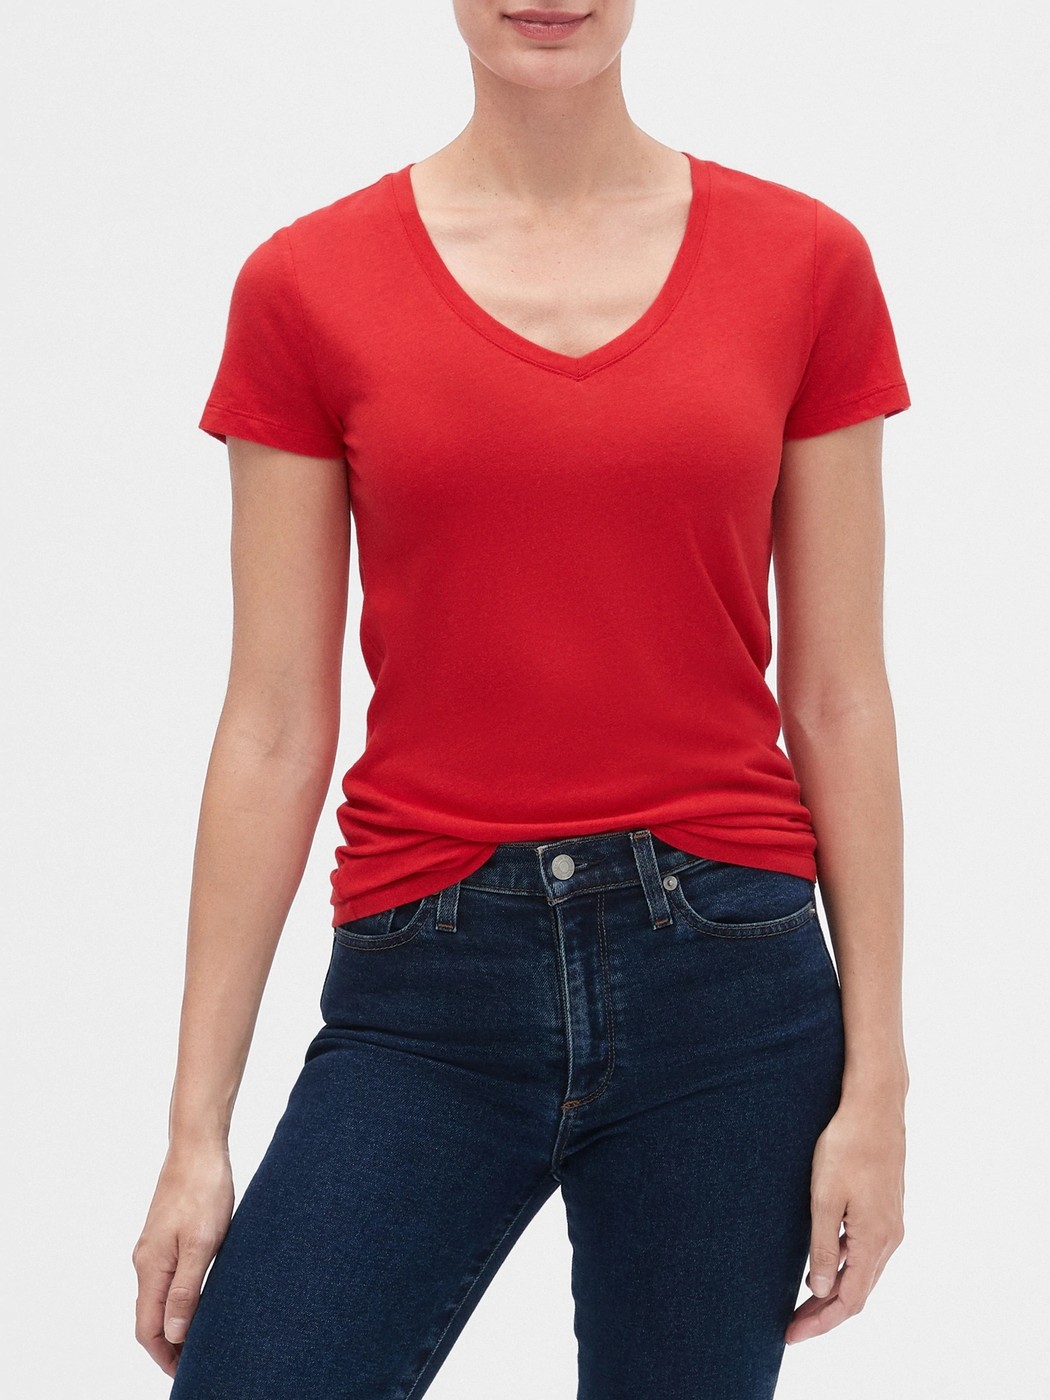 Красная футболка - женская футболка GAP